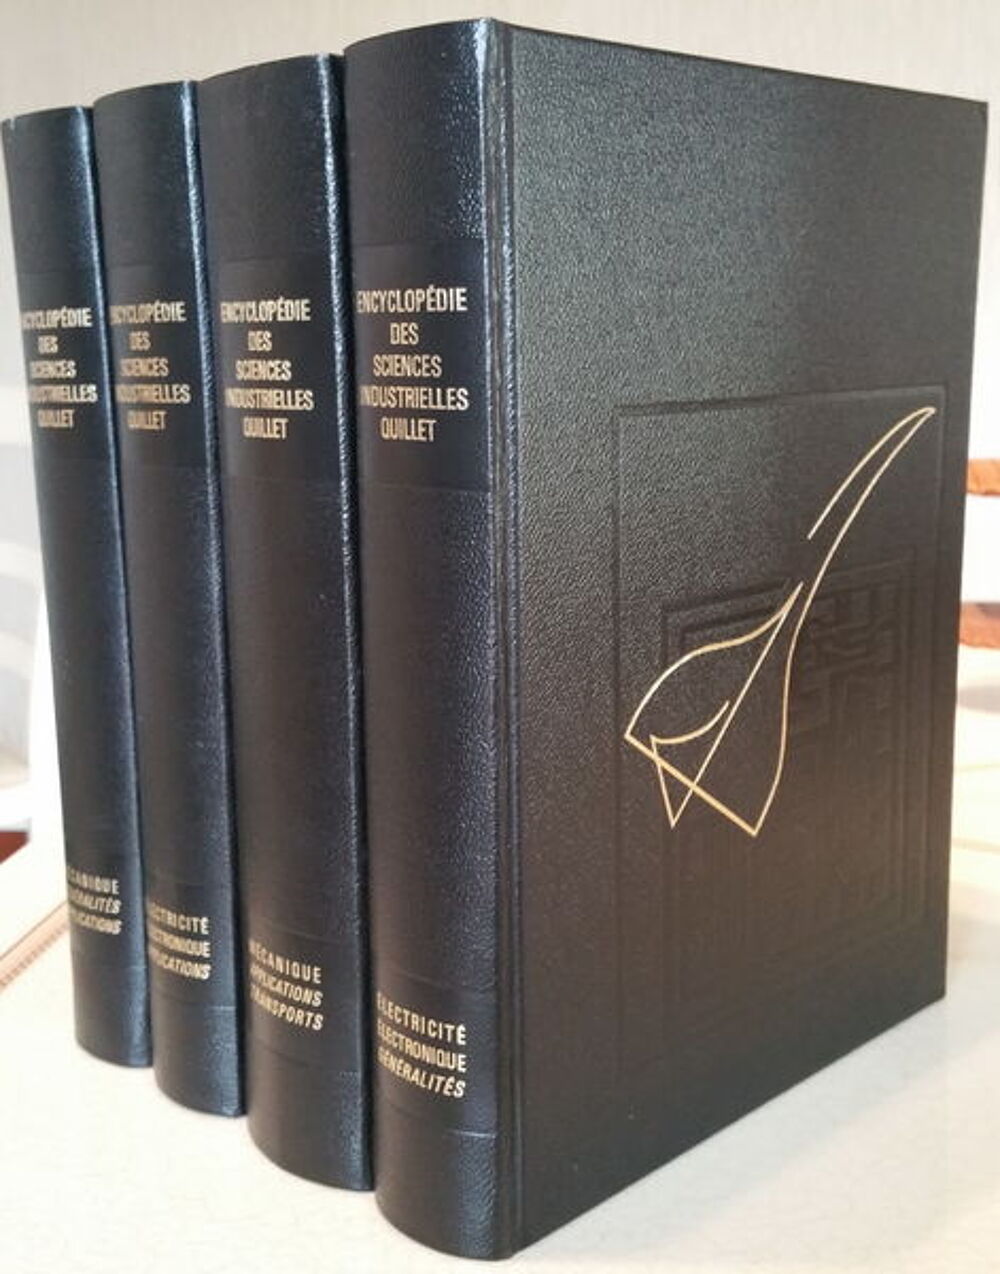 Encyclop&eacute;die des Sciences industrielles Quillet 4 volumes Livres et BD